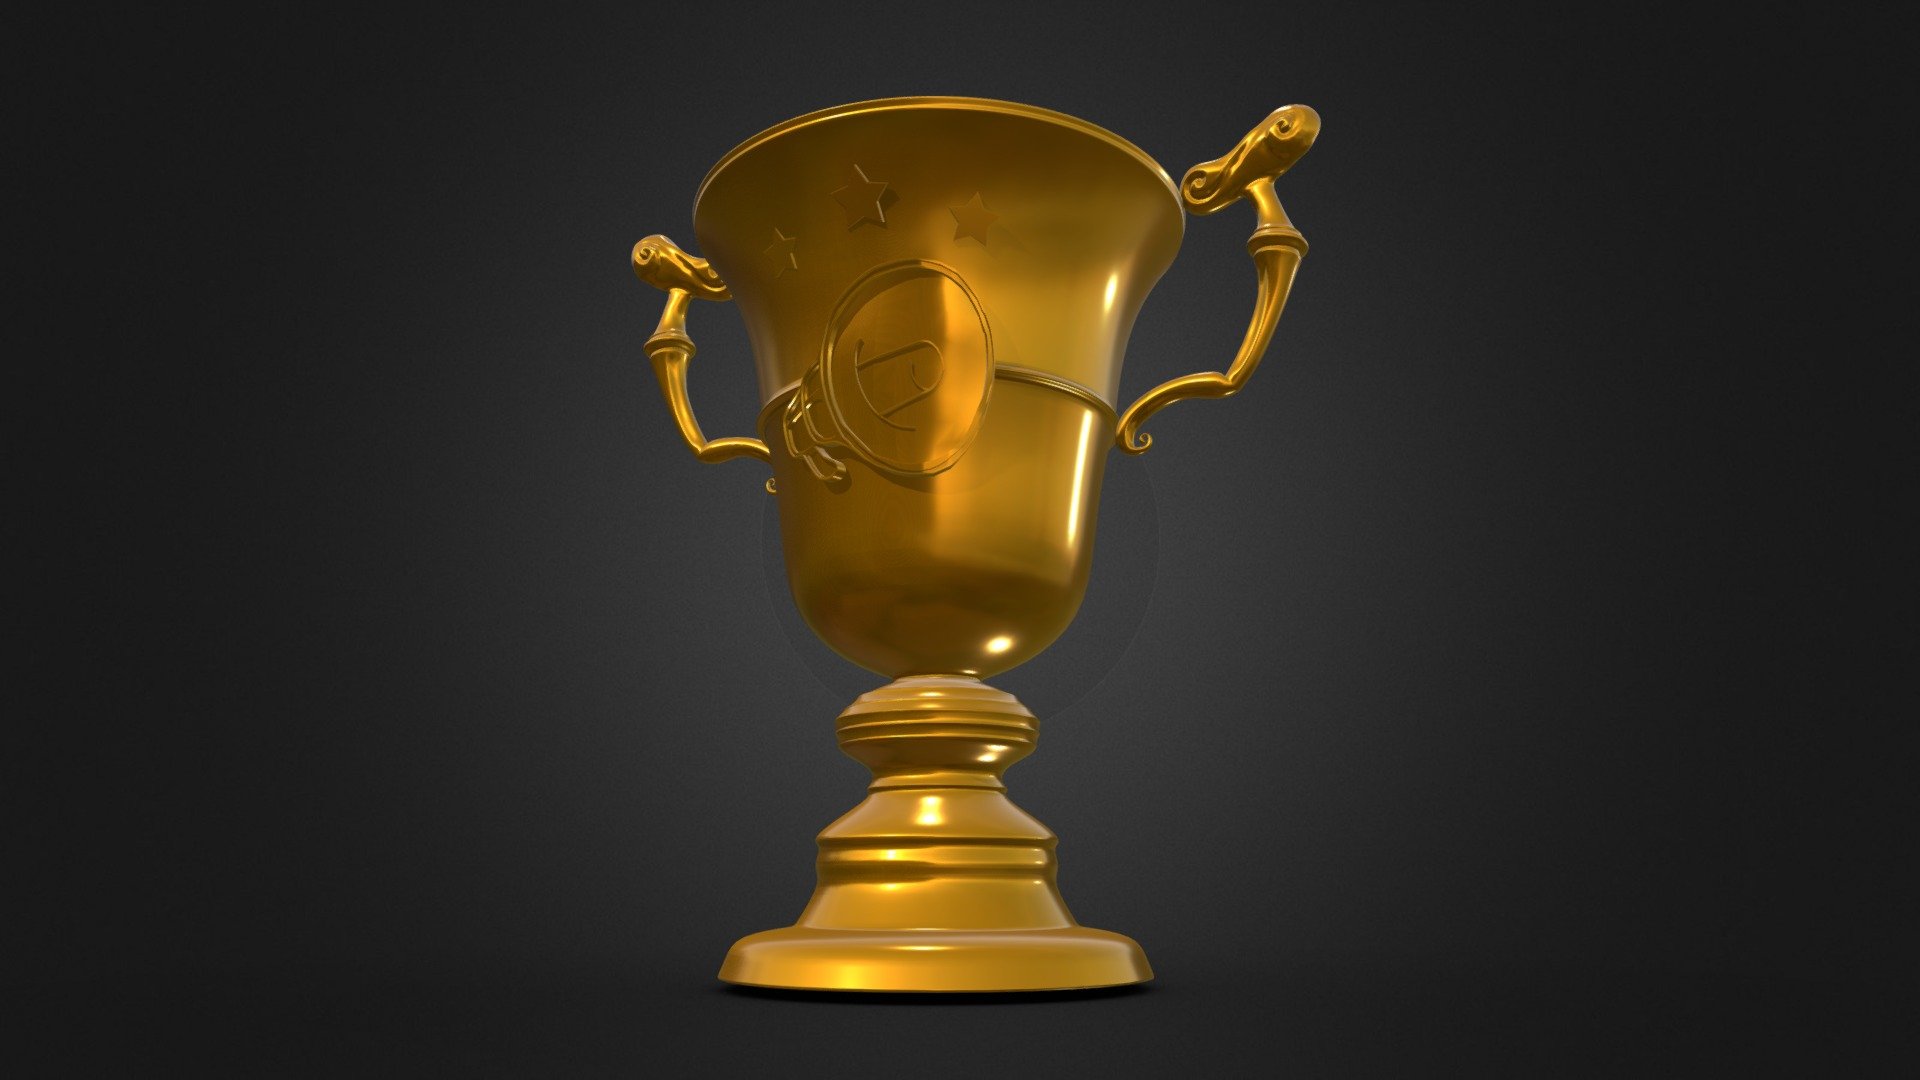 Le véritable trophée des Matchs à Domicile, organisés par la Compagnie PAF! - Trophée MATCH À DOMICILE - Compagnie PAF! - 3D model by RobinDeriaud (@shdwrck) 3d model